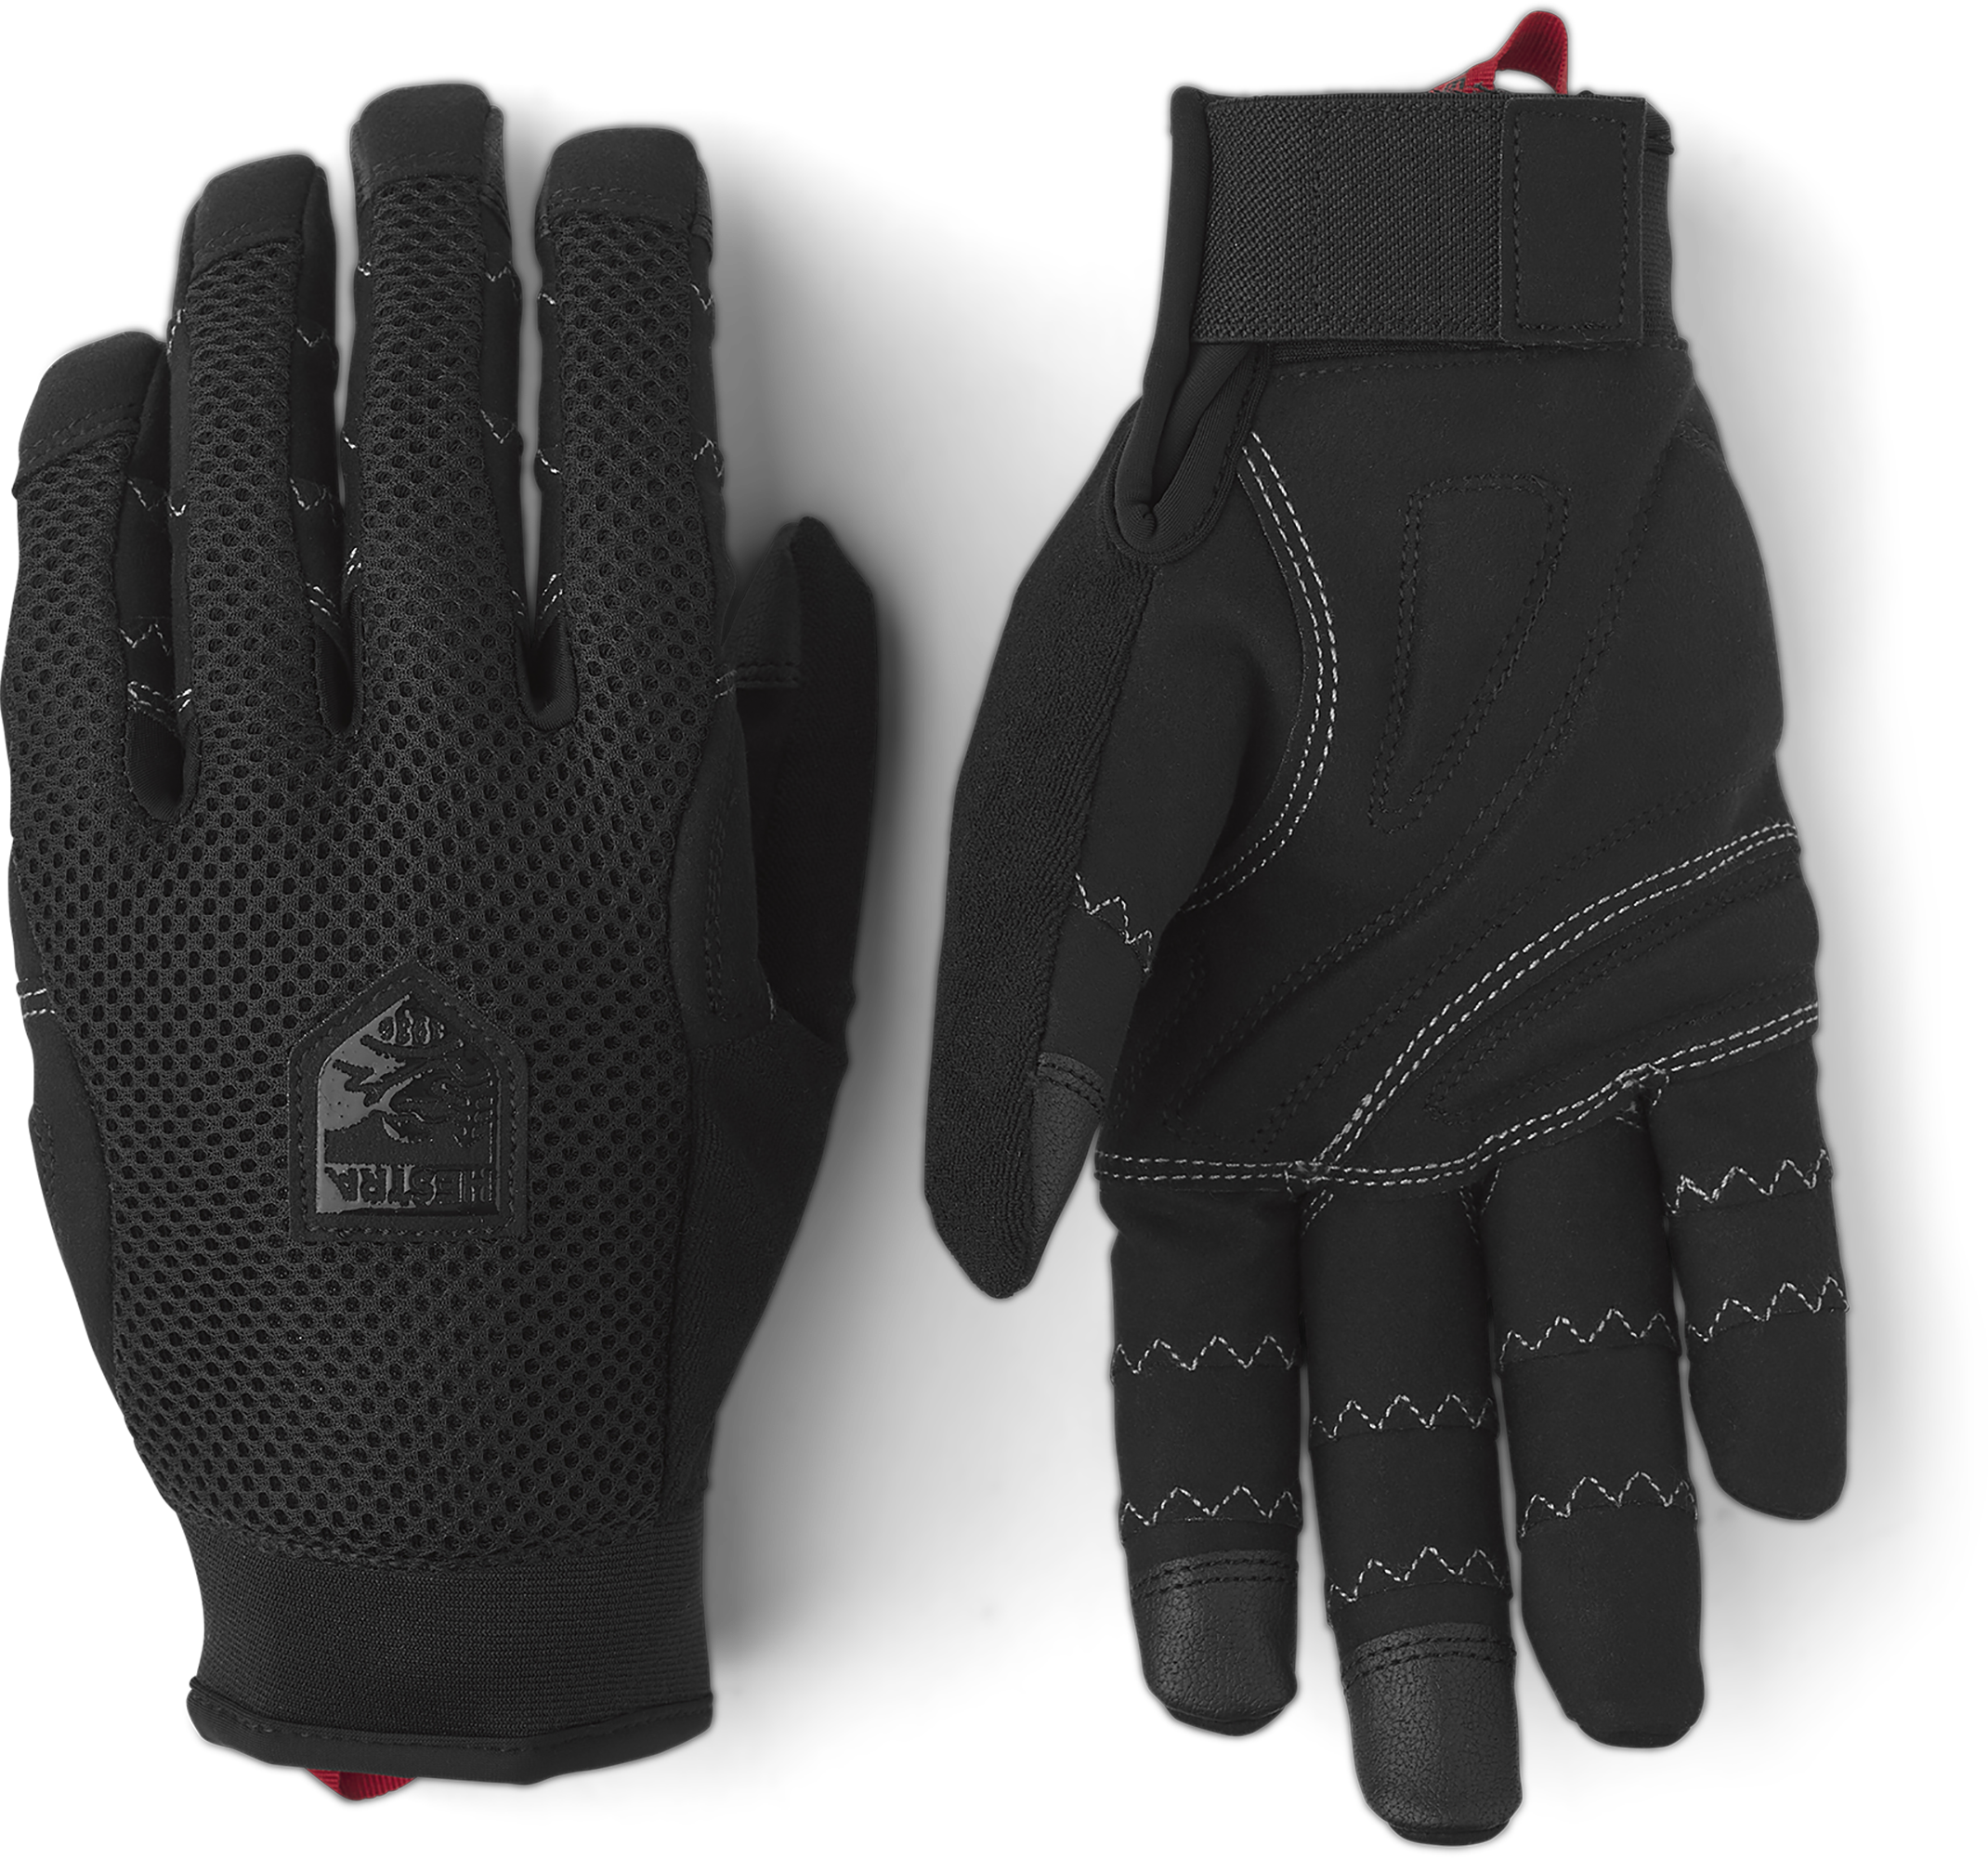 Hestra Ergo Grip Enduro Breathable Protective Full Finger Bike Glove for Men/Women 5-Finger Durable Lightweight Glove for Mountain Biking 